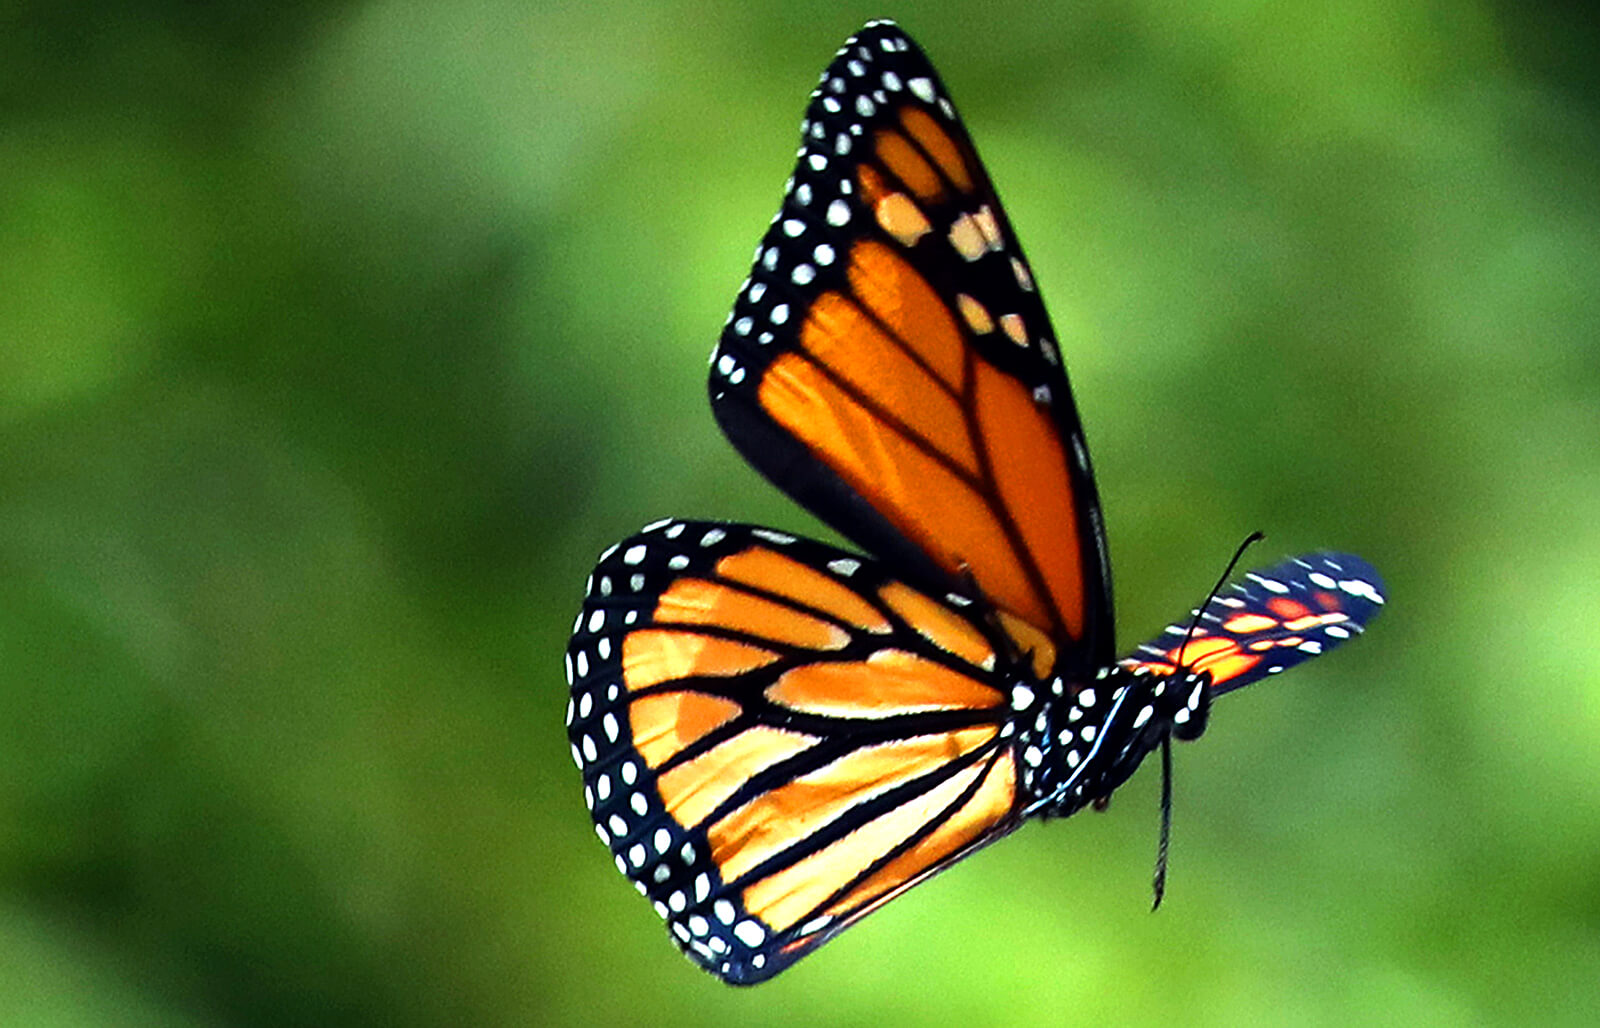 Mẫu hình xăm con bướm tuyệt đẹp đầy ý nghĩa cho bạn gái quyến rũ - GUU.vn